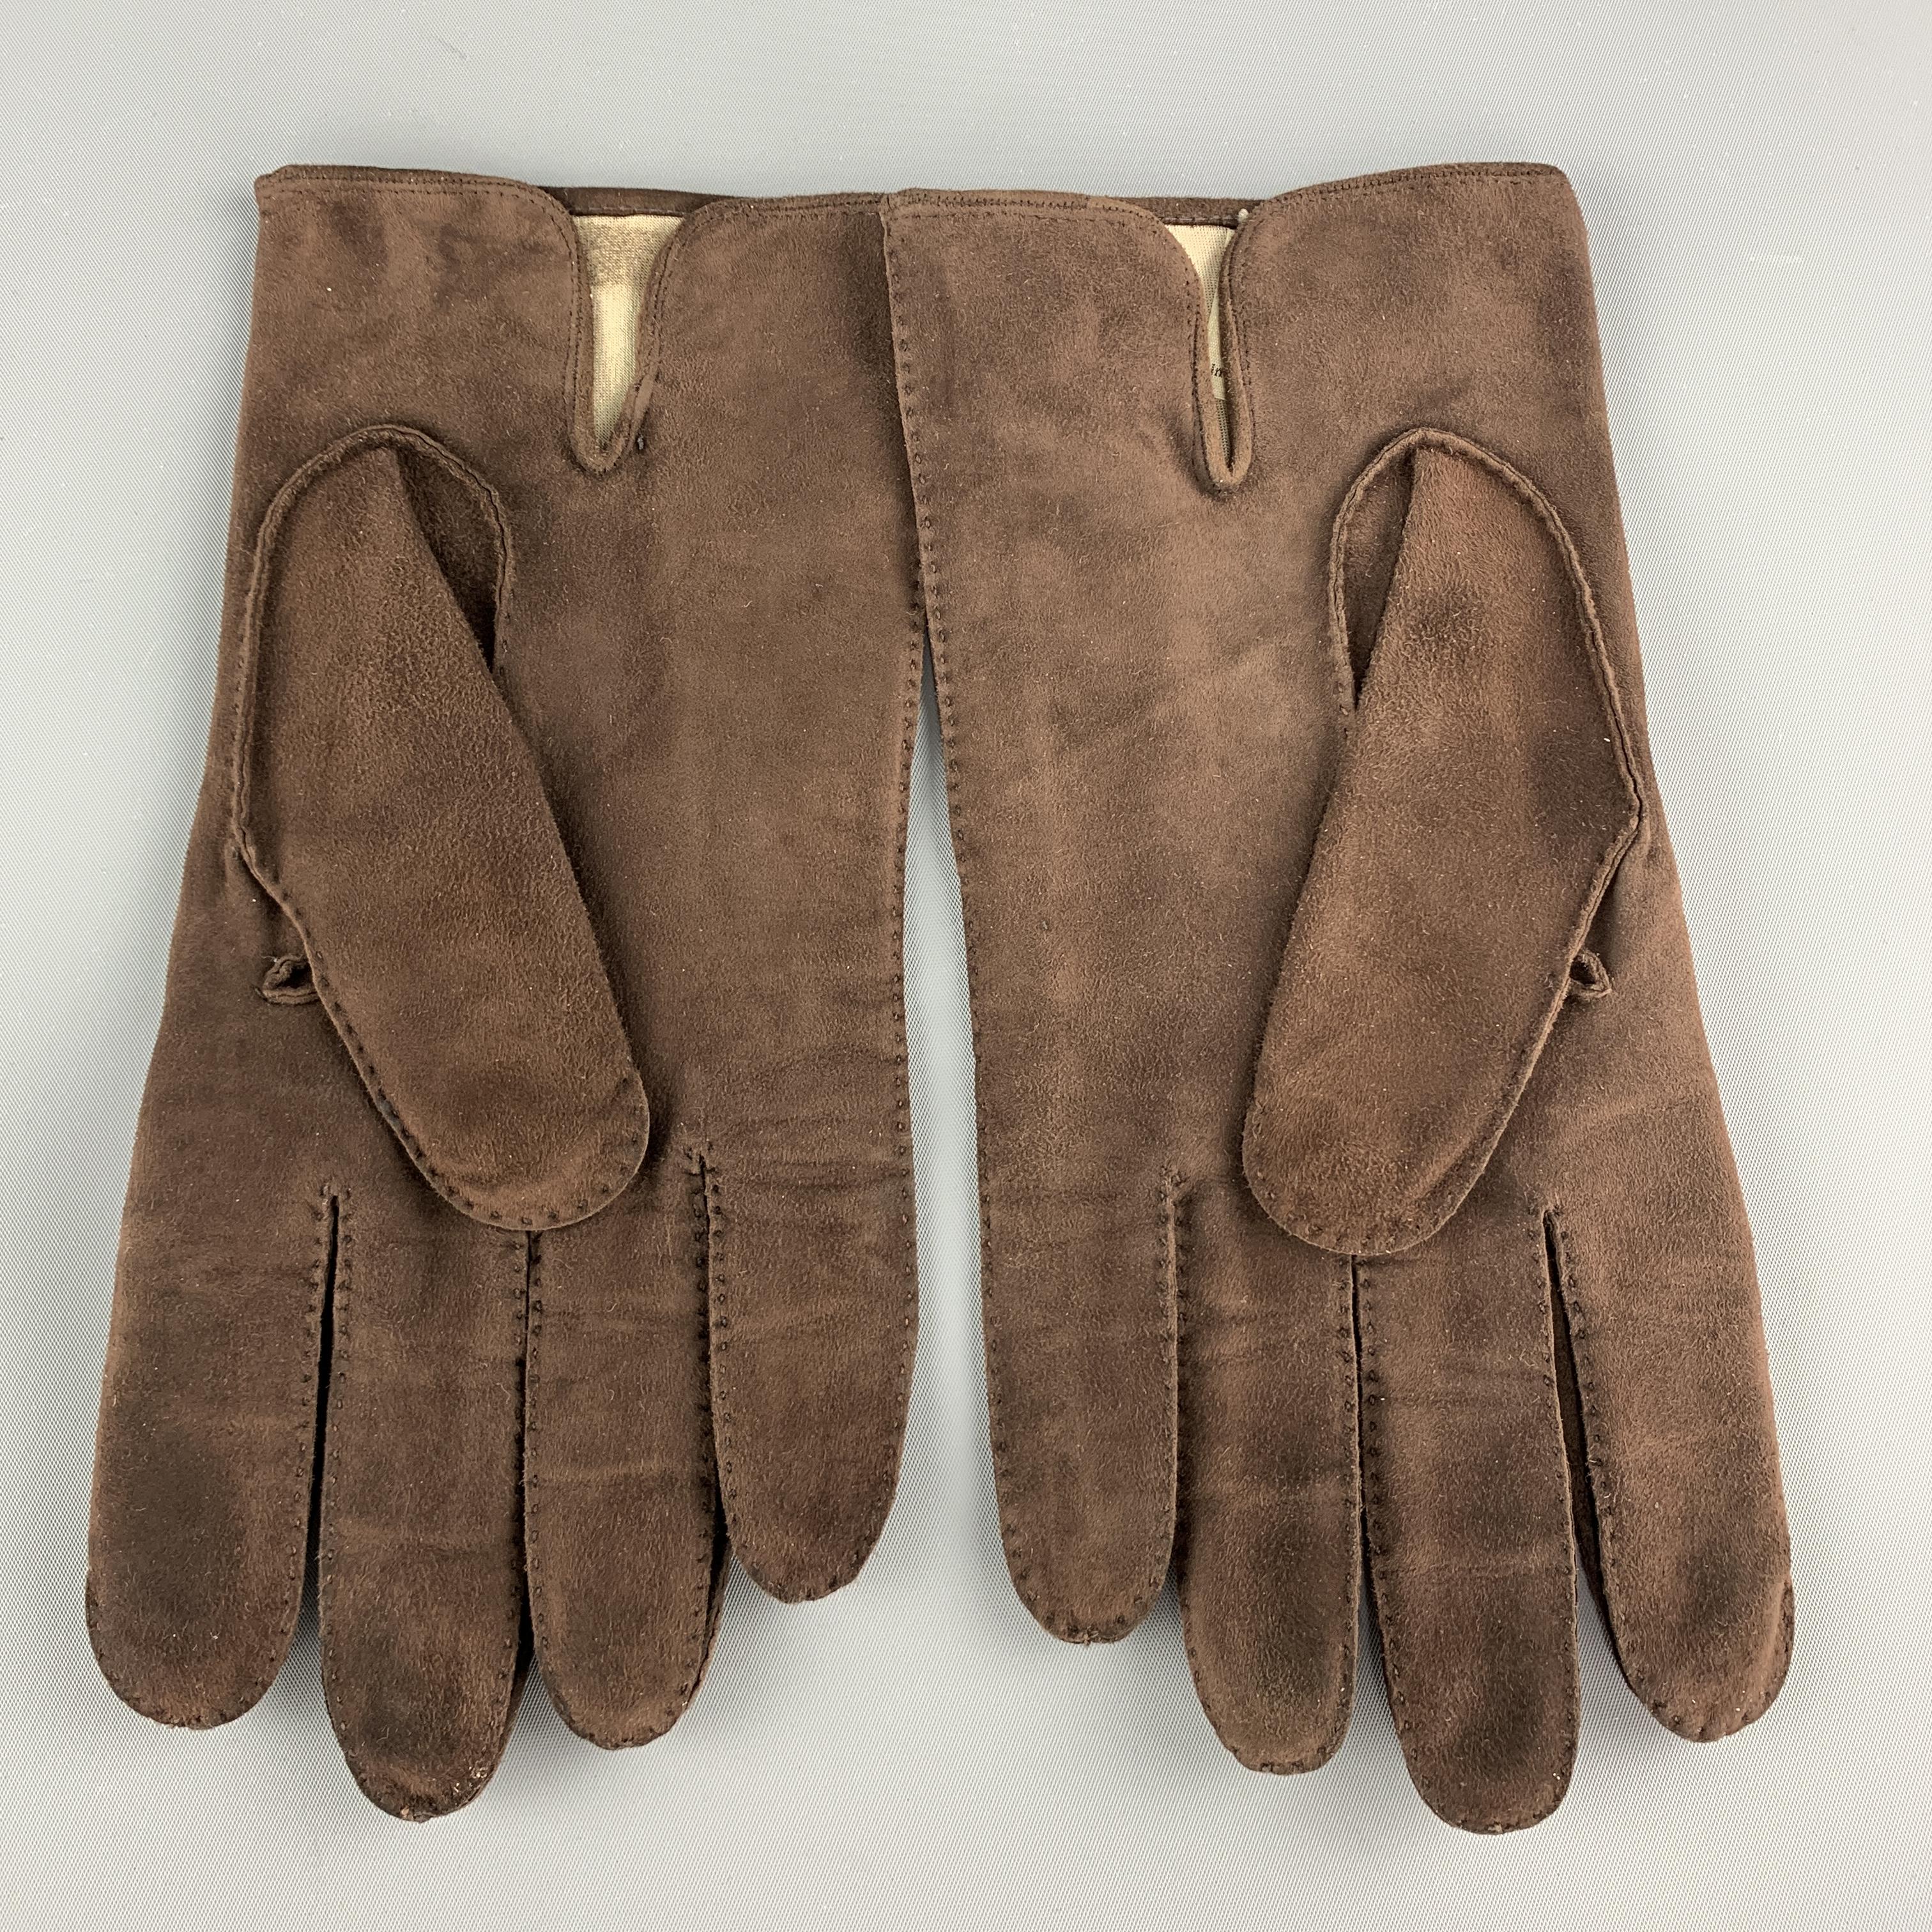 madova gloves price